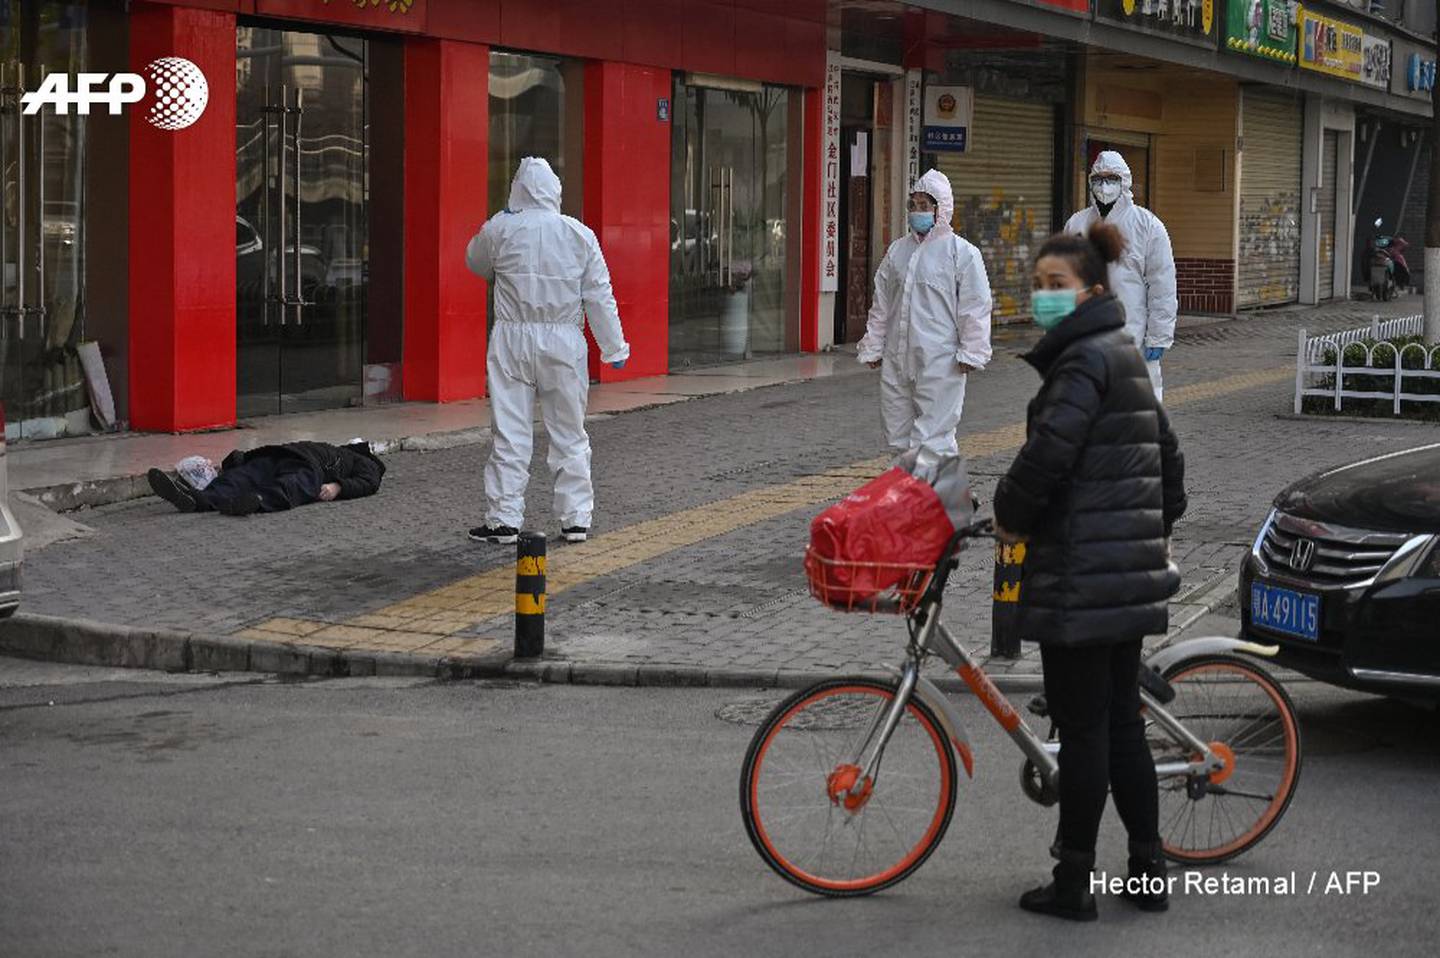 El cadaver de un hombre yace en medio de una calle en el centro de Wuhan, China, a finales de enero de 2020. Foto: Héctor Retamal / AFP